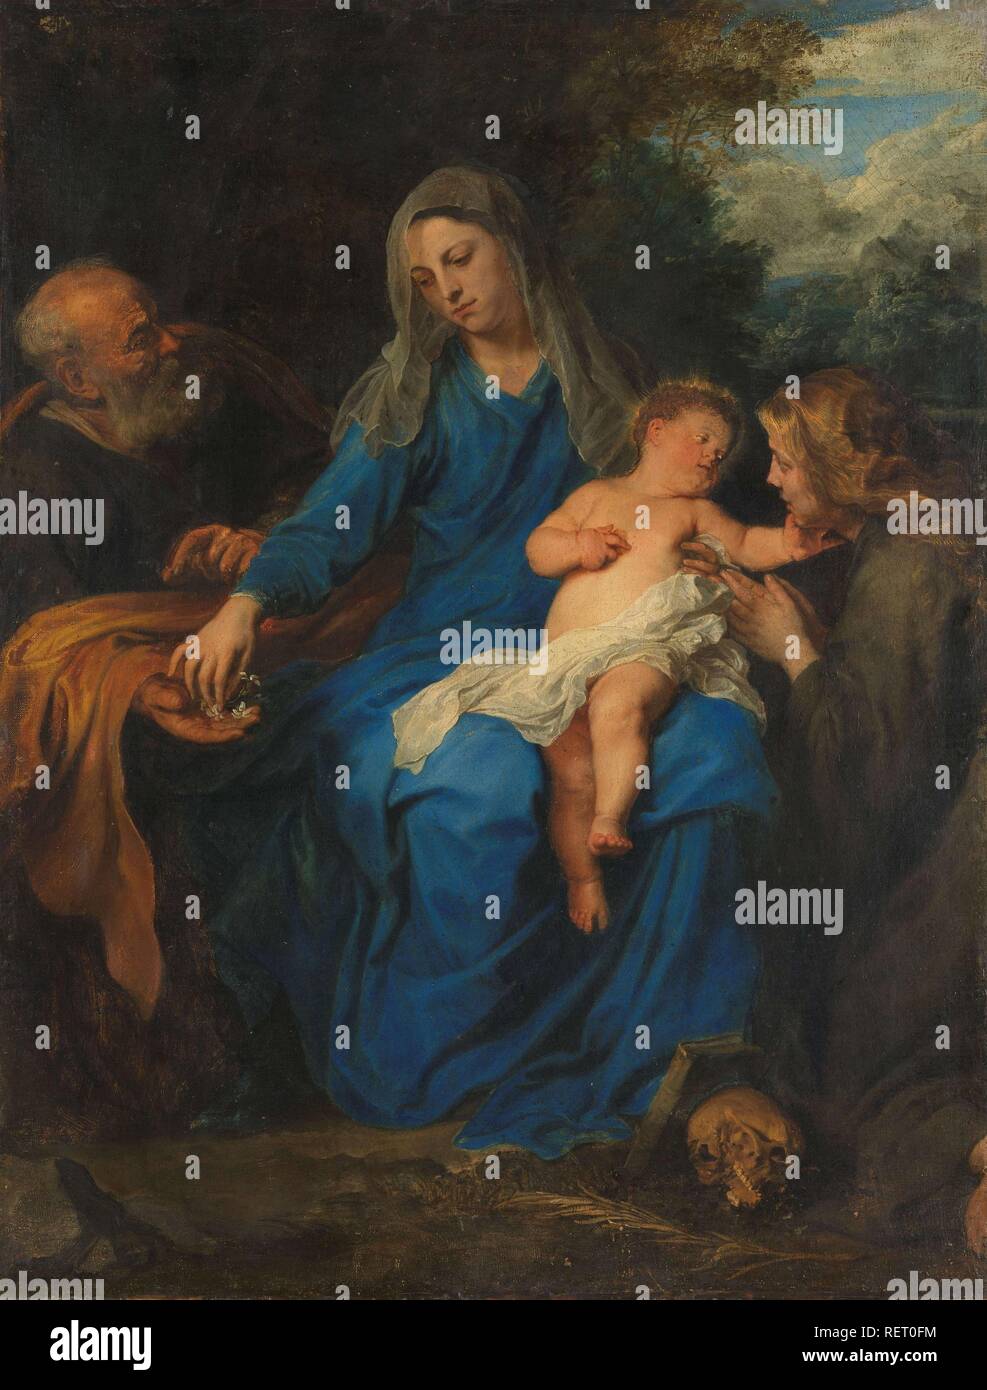 La Santa Famiglia con Maria Maddalena. Dating: c. 1620 - c. 1700. Misurazioni: h 100 cm × W 76,5 cm; d 8 cm. Museo: Rijksmuseum Amsterdam. Autore: Anthony van Dyck (modo di). Foto Stock